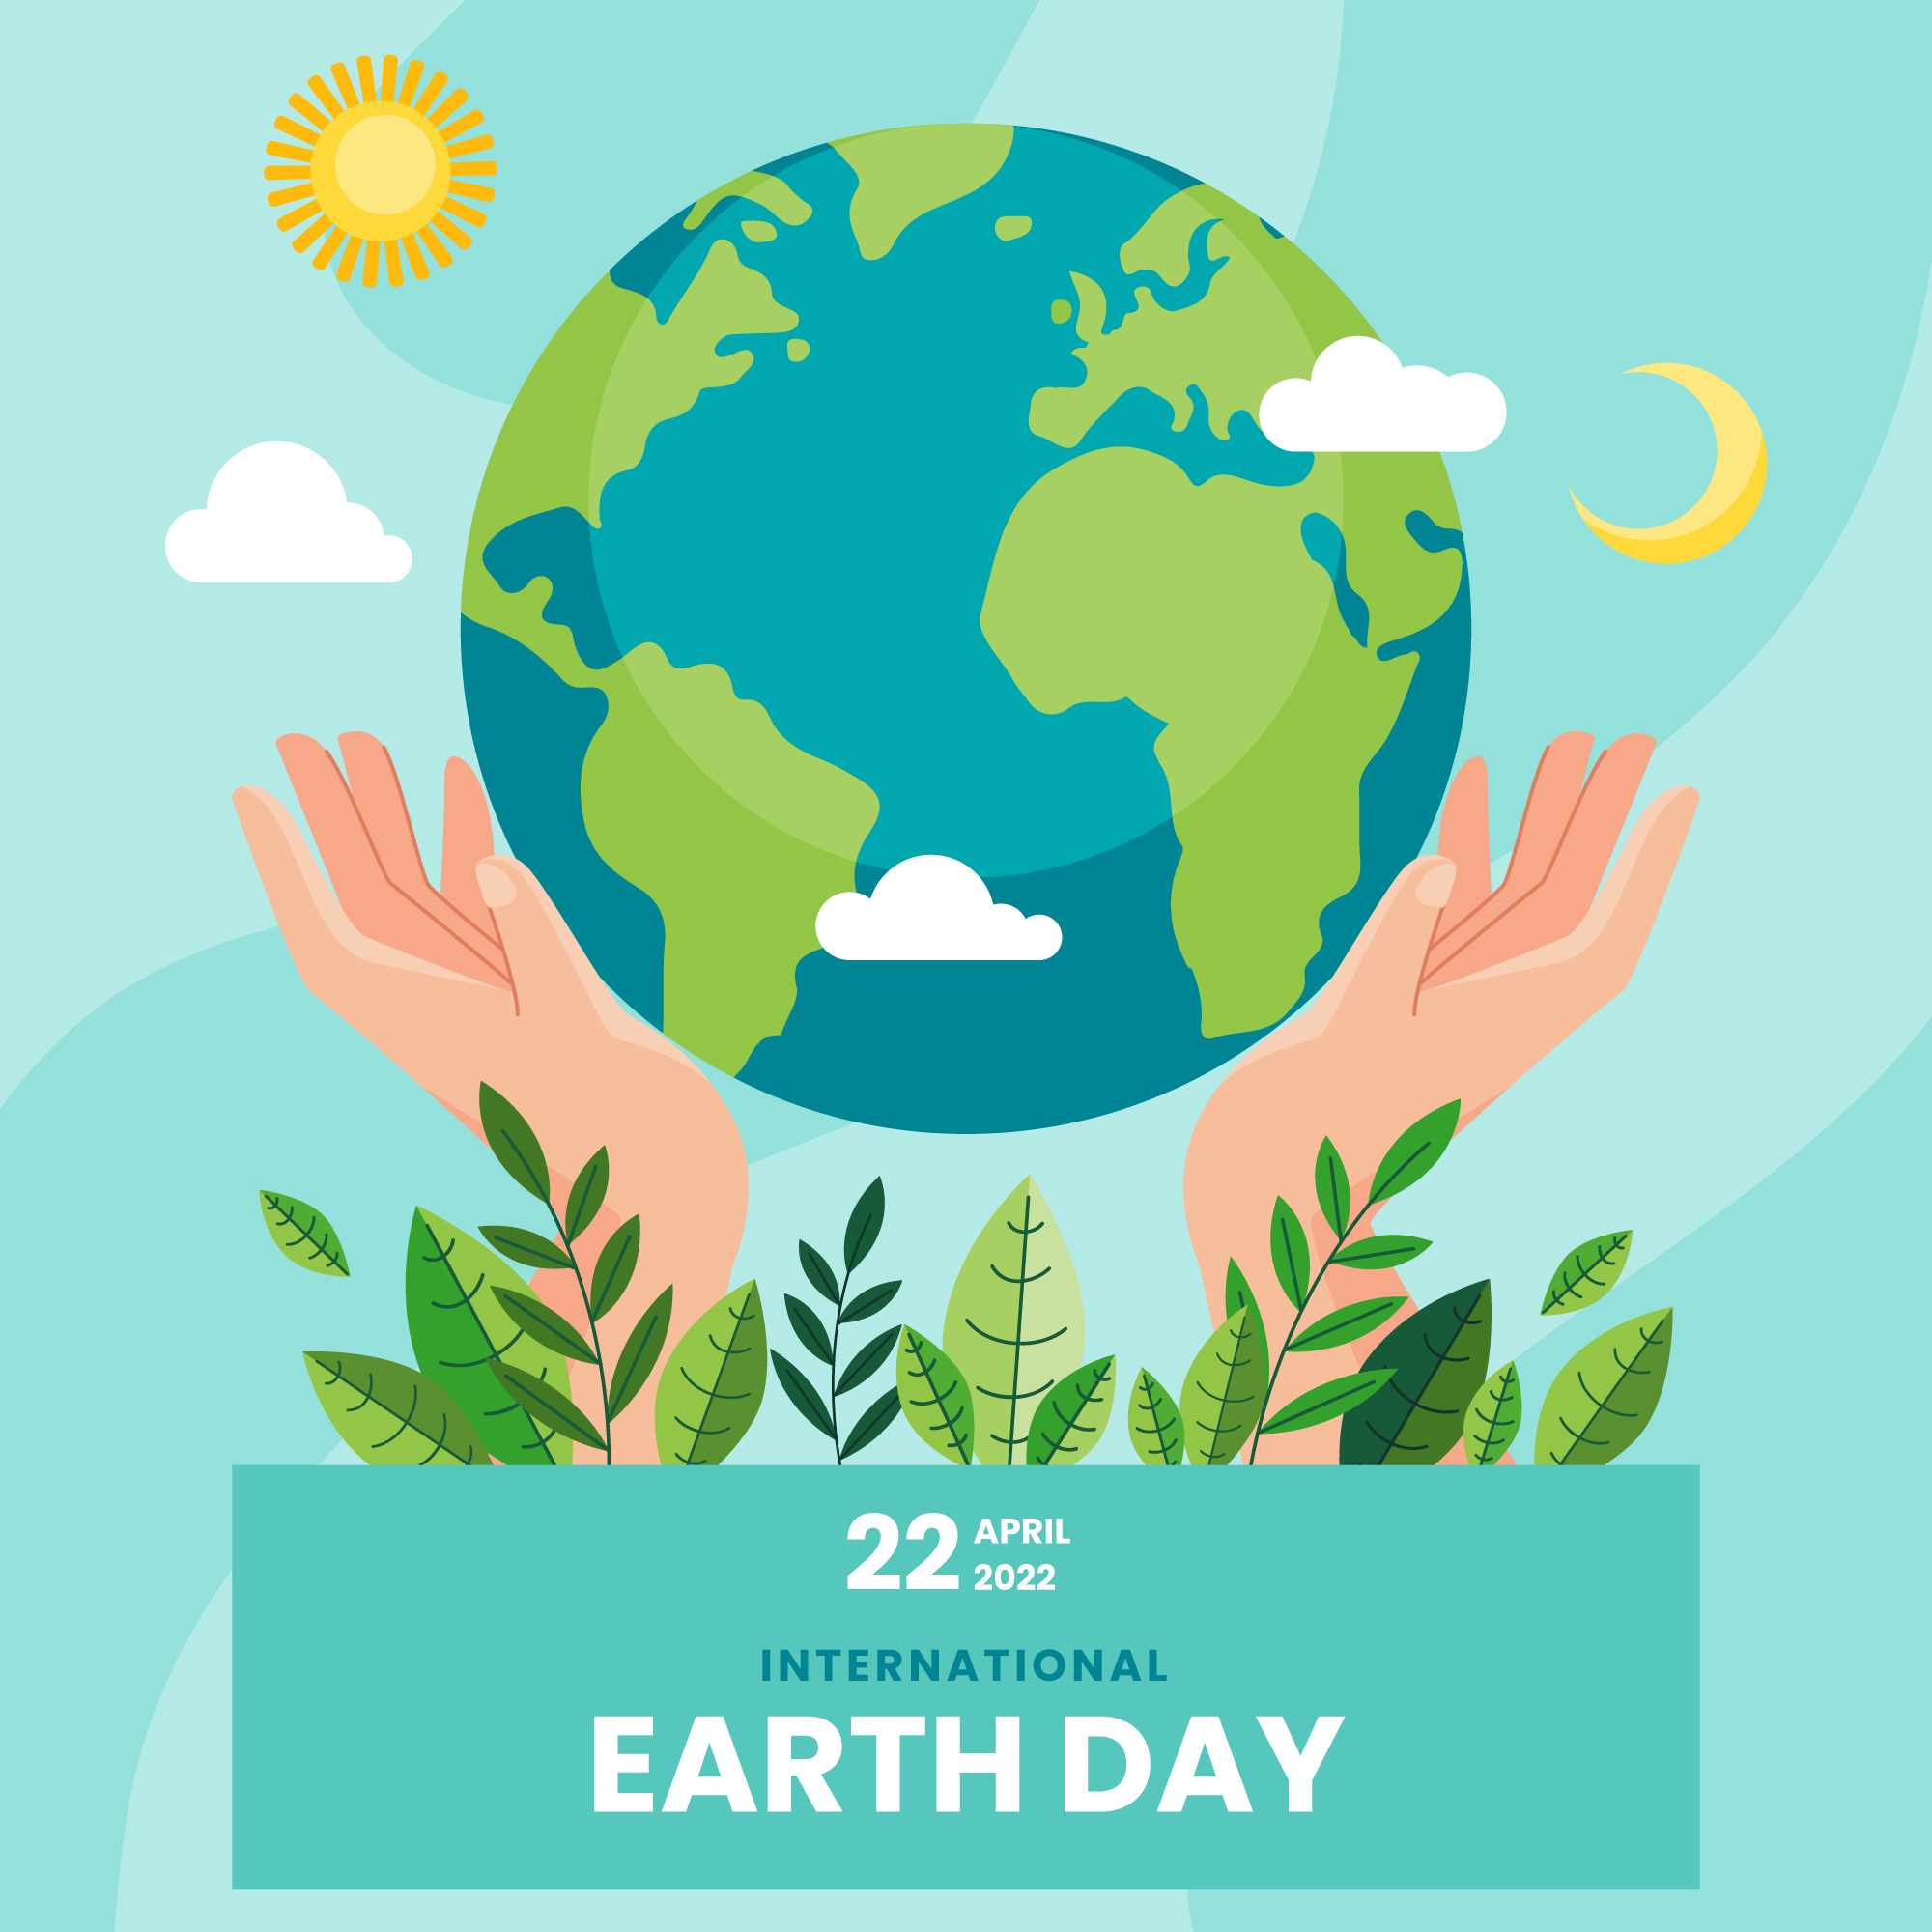 Một ngày nghĩ về trái đất Bạn có thể làm gì trong "Ngày Trái đất"